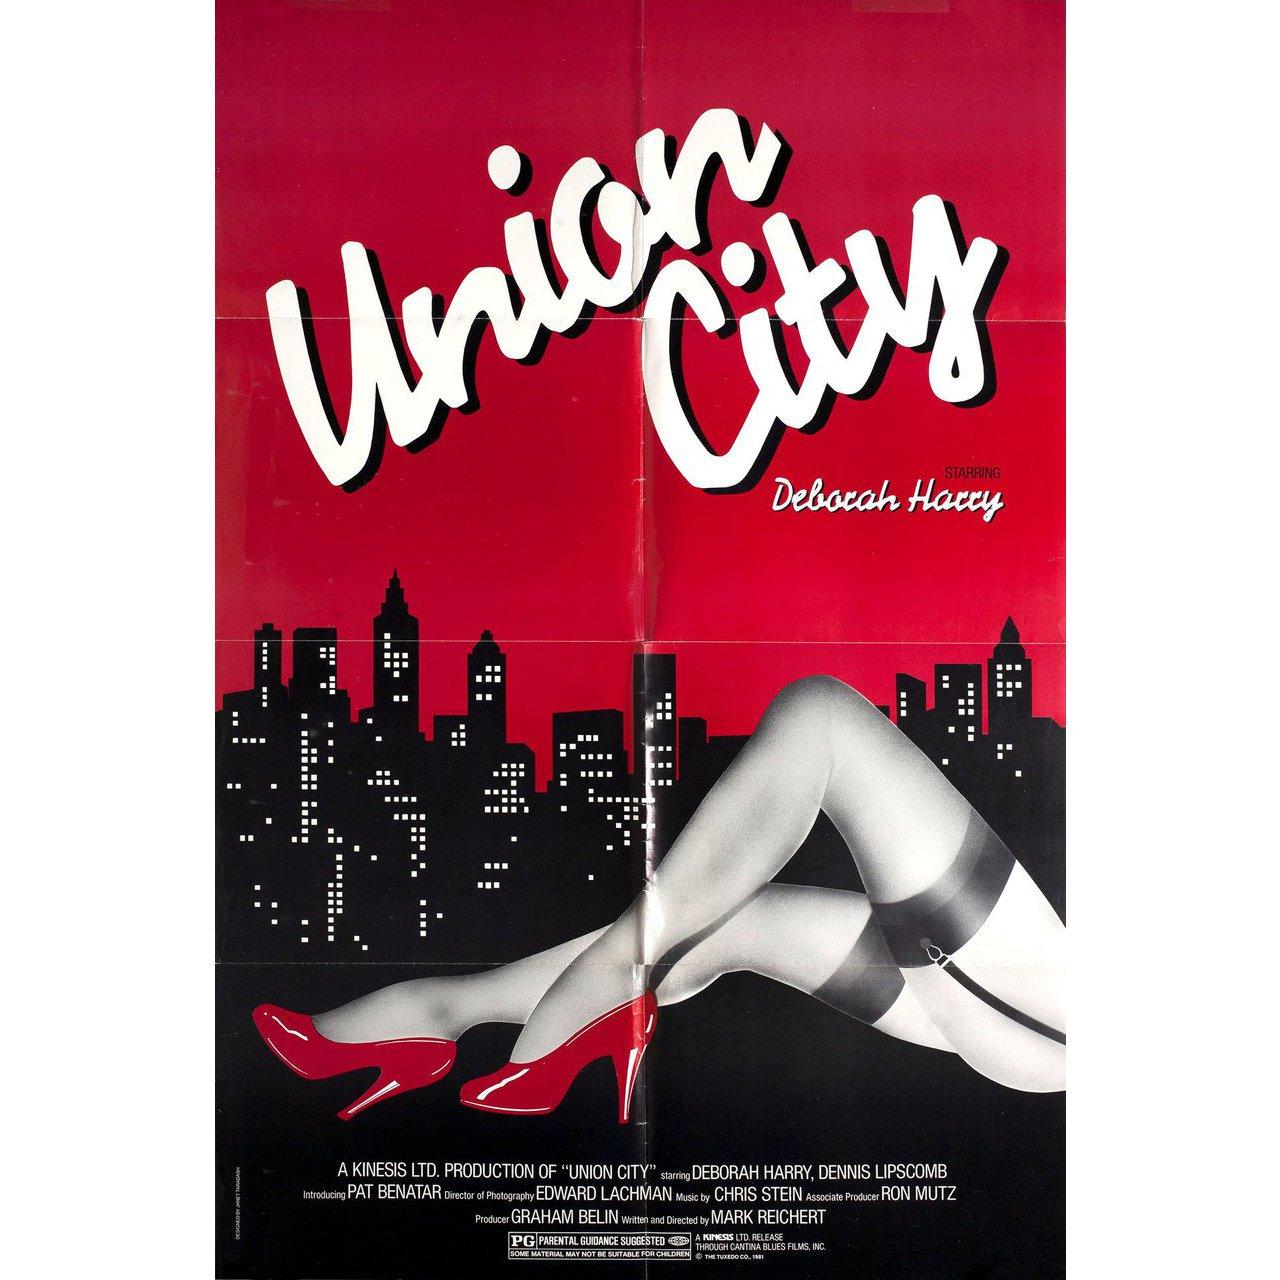 Original US-Plakat von 1981 für den Film Union City unter der Regie von Marcus Reichert mit Sam McMurray / Dennis Lipscomb / Terry Walsh / Cynthia Crisp. Sehr guter bis sehr guter Zustand, gefaltet. Viele Originalplakate wurden gefaltet ausgegeben